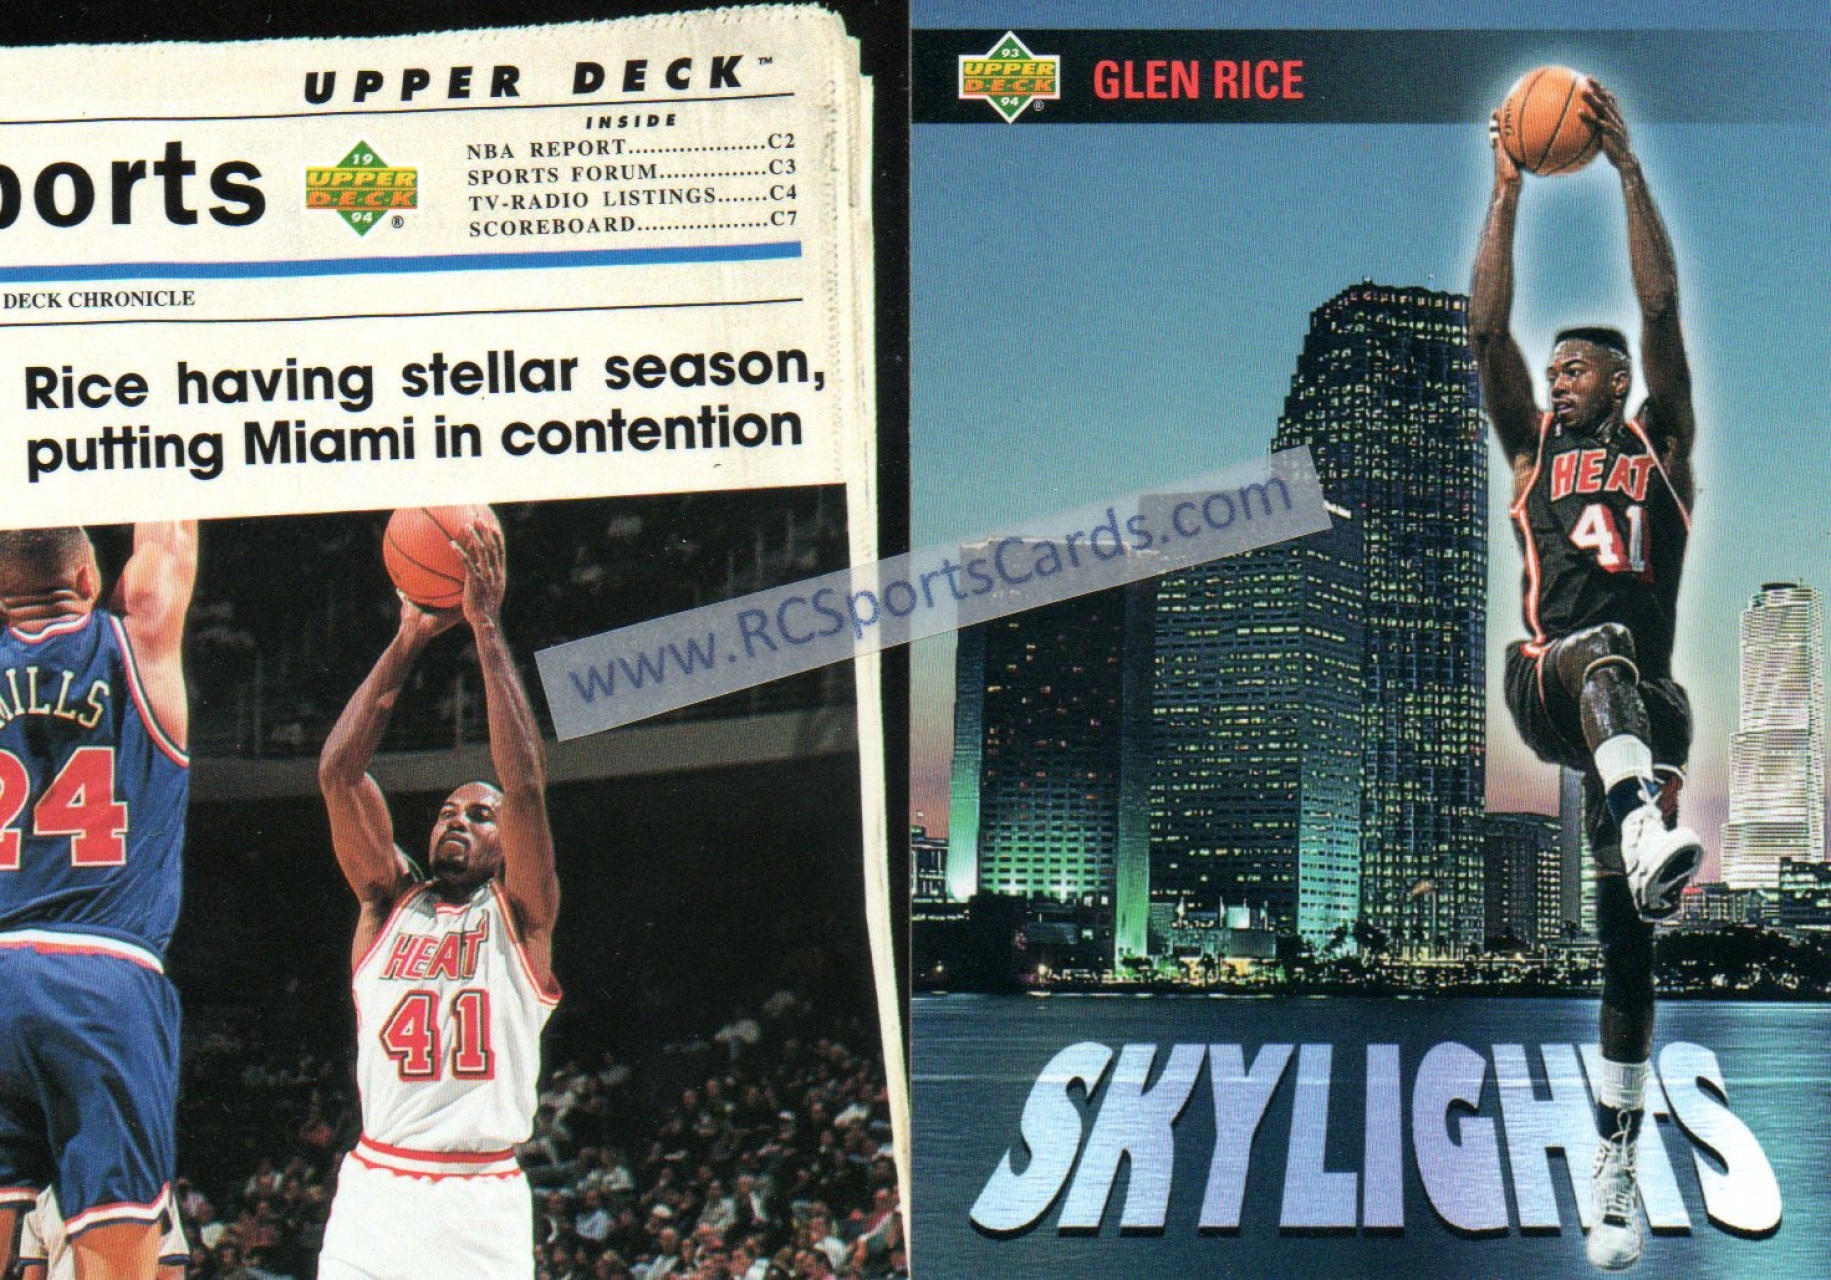 Rony Seikaly - Heat #99 Fleer Ultra 1994-5 Basketball Trading Card